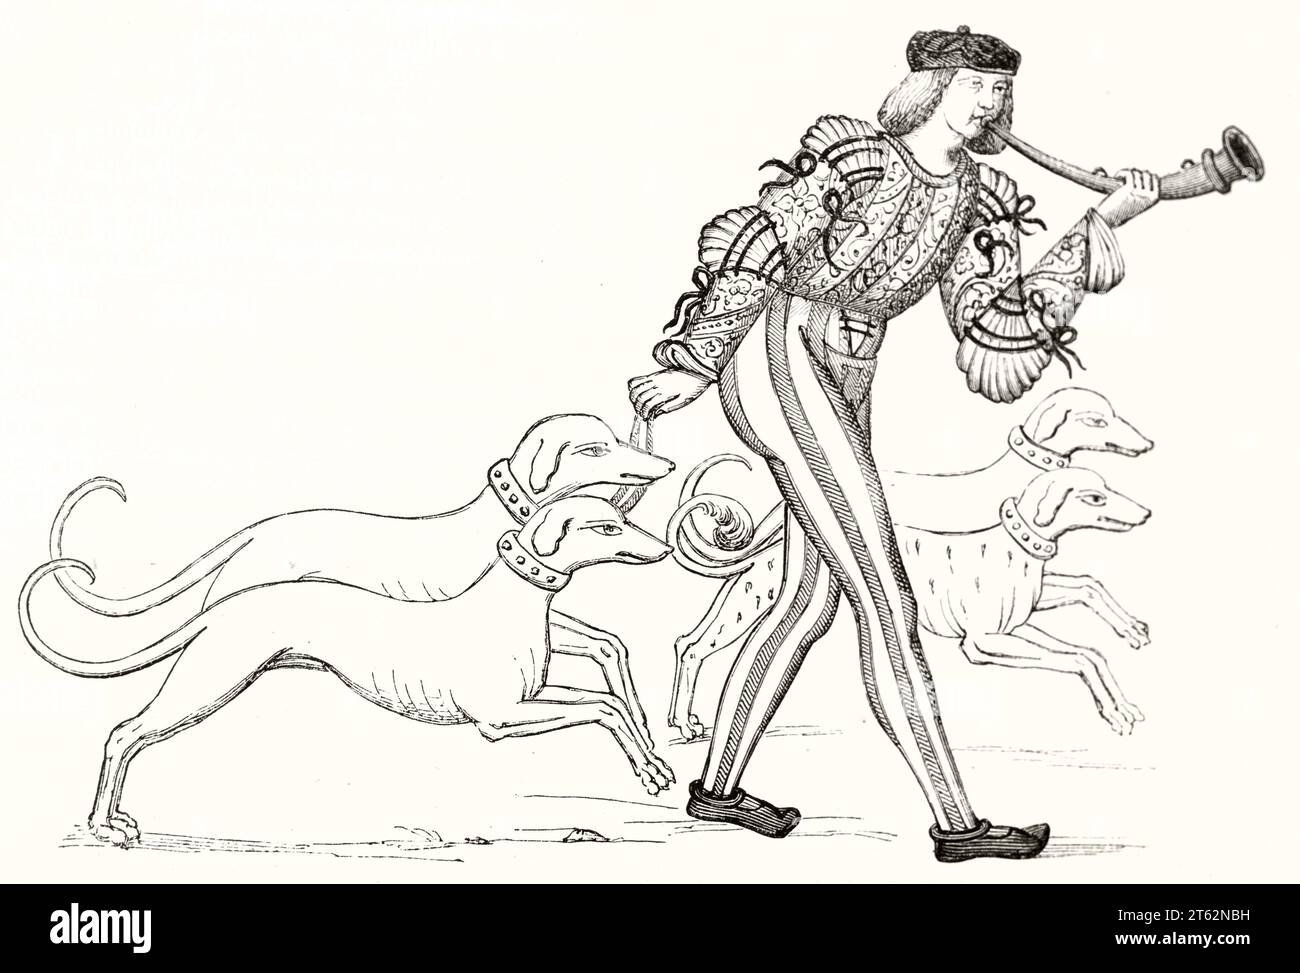 Illustration eines Mannes, der Horn spielt, während er an der Leine Jagdhunde trägt (Ludwig XII.) Von Willemin, publ. Auf Magasin Pittoresque, Paris, 1849 Stockfoto